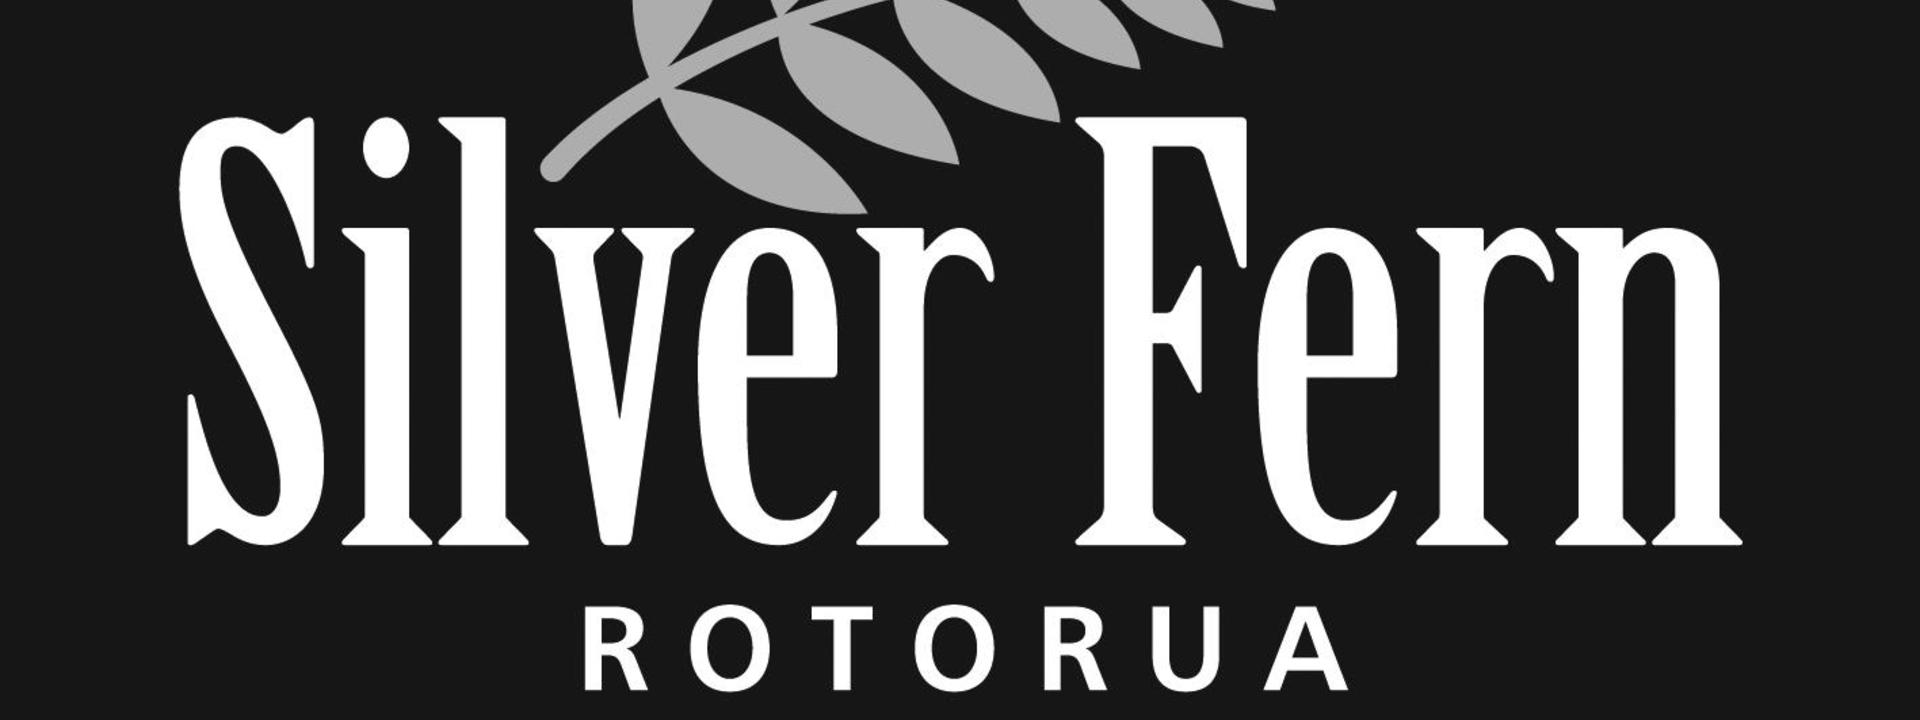 Silver Fern Logo